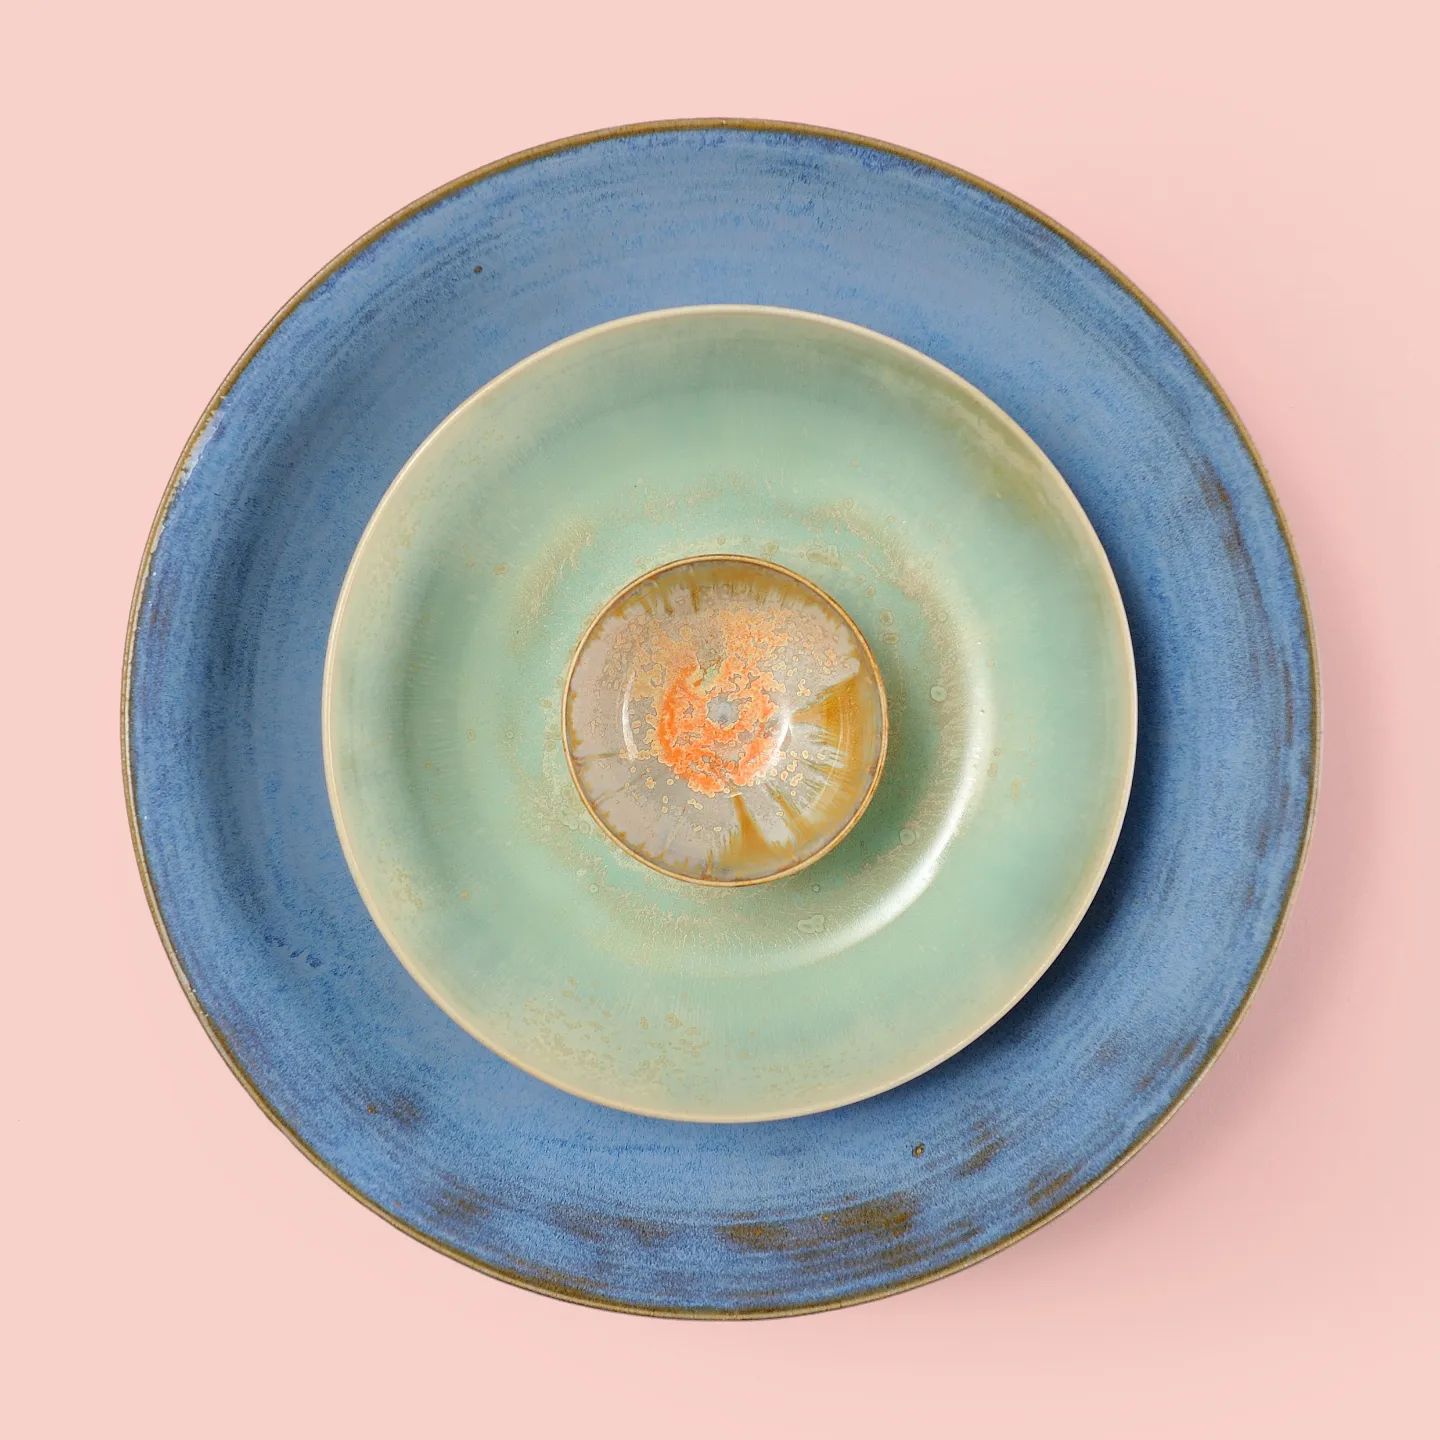 C'est l'heure des nouveaux autocollants ! J'en ai créé un à partir de cette photo. Ainsi, vos cadeaux seront dorénavant personnalisés avec un nid de bols. #Present #ceramics #ceramique #keramik #pottery #bowls #colours #handmade #wheelthrown #handcrafted #handmade #stoneware #dutchdesign #design #artisan #Haarlem #clay #potterystudio #ceramicsstudio